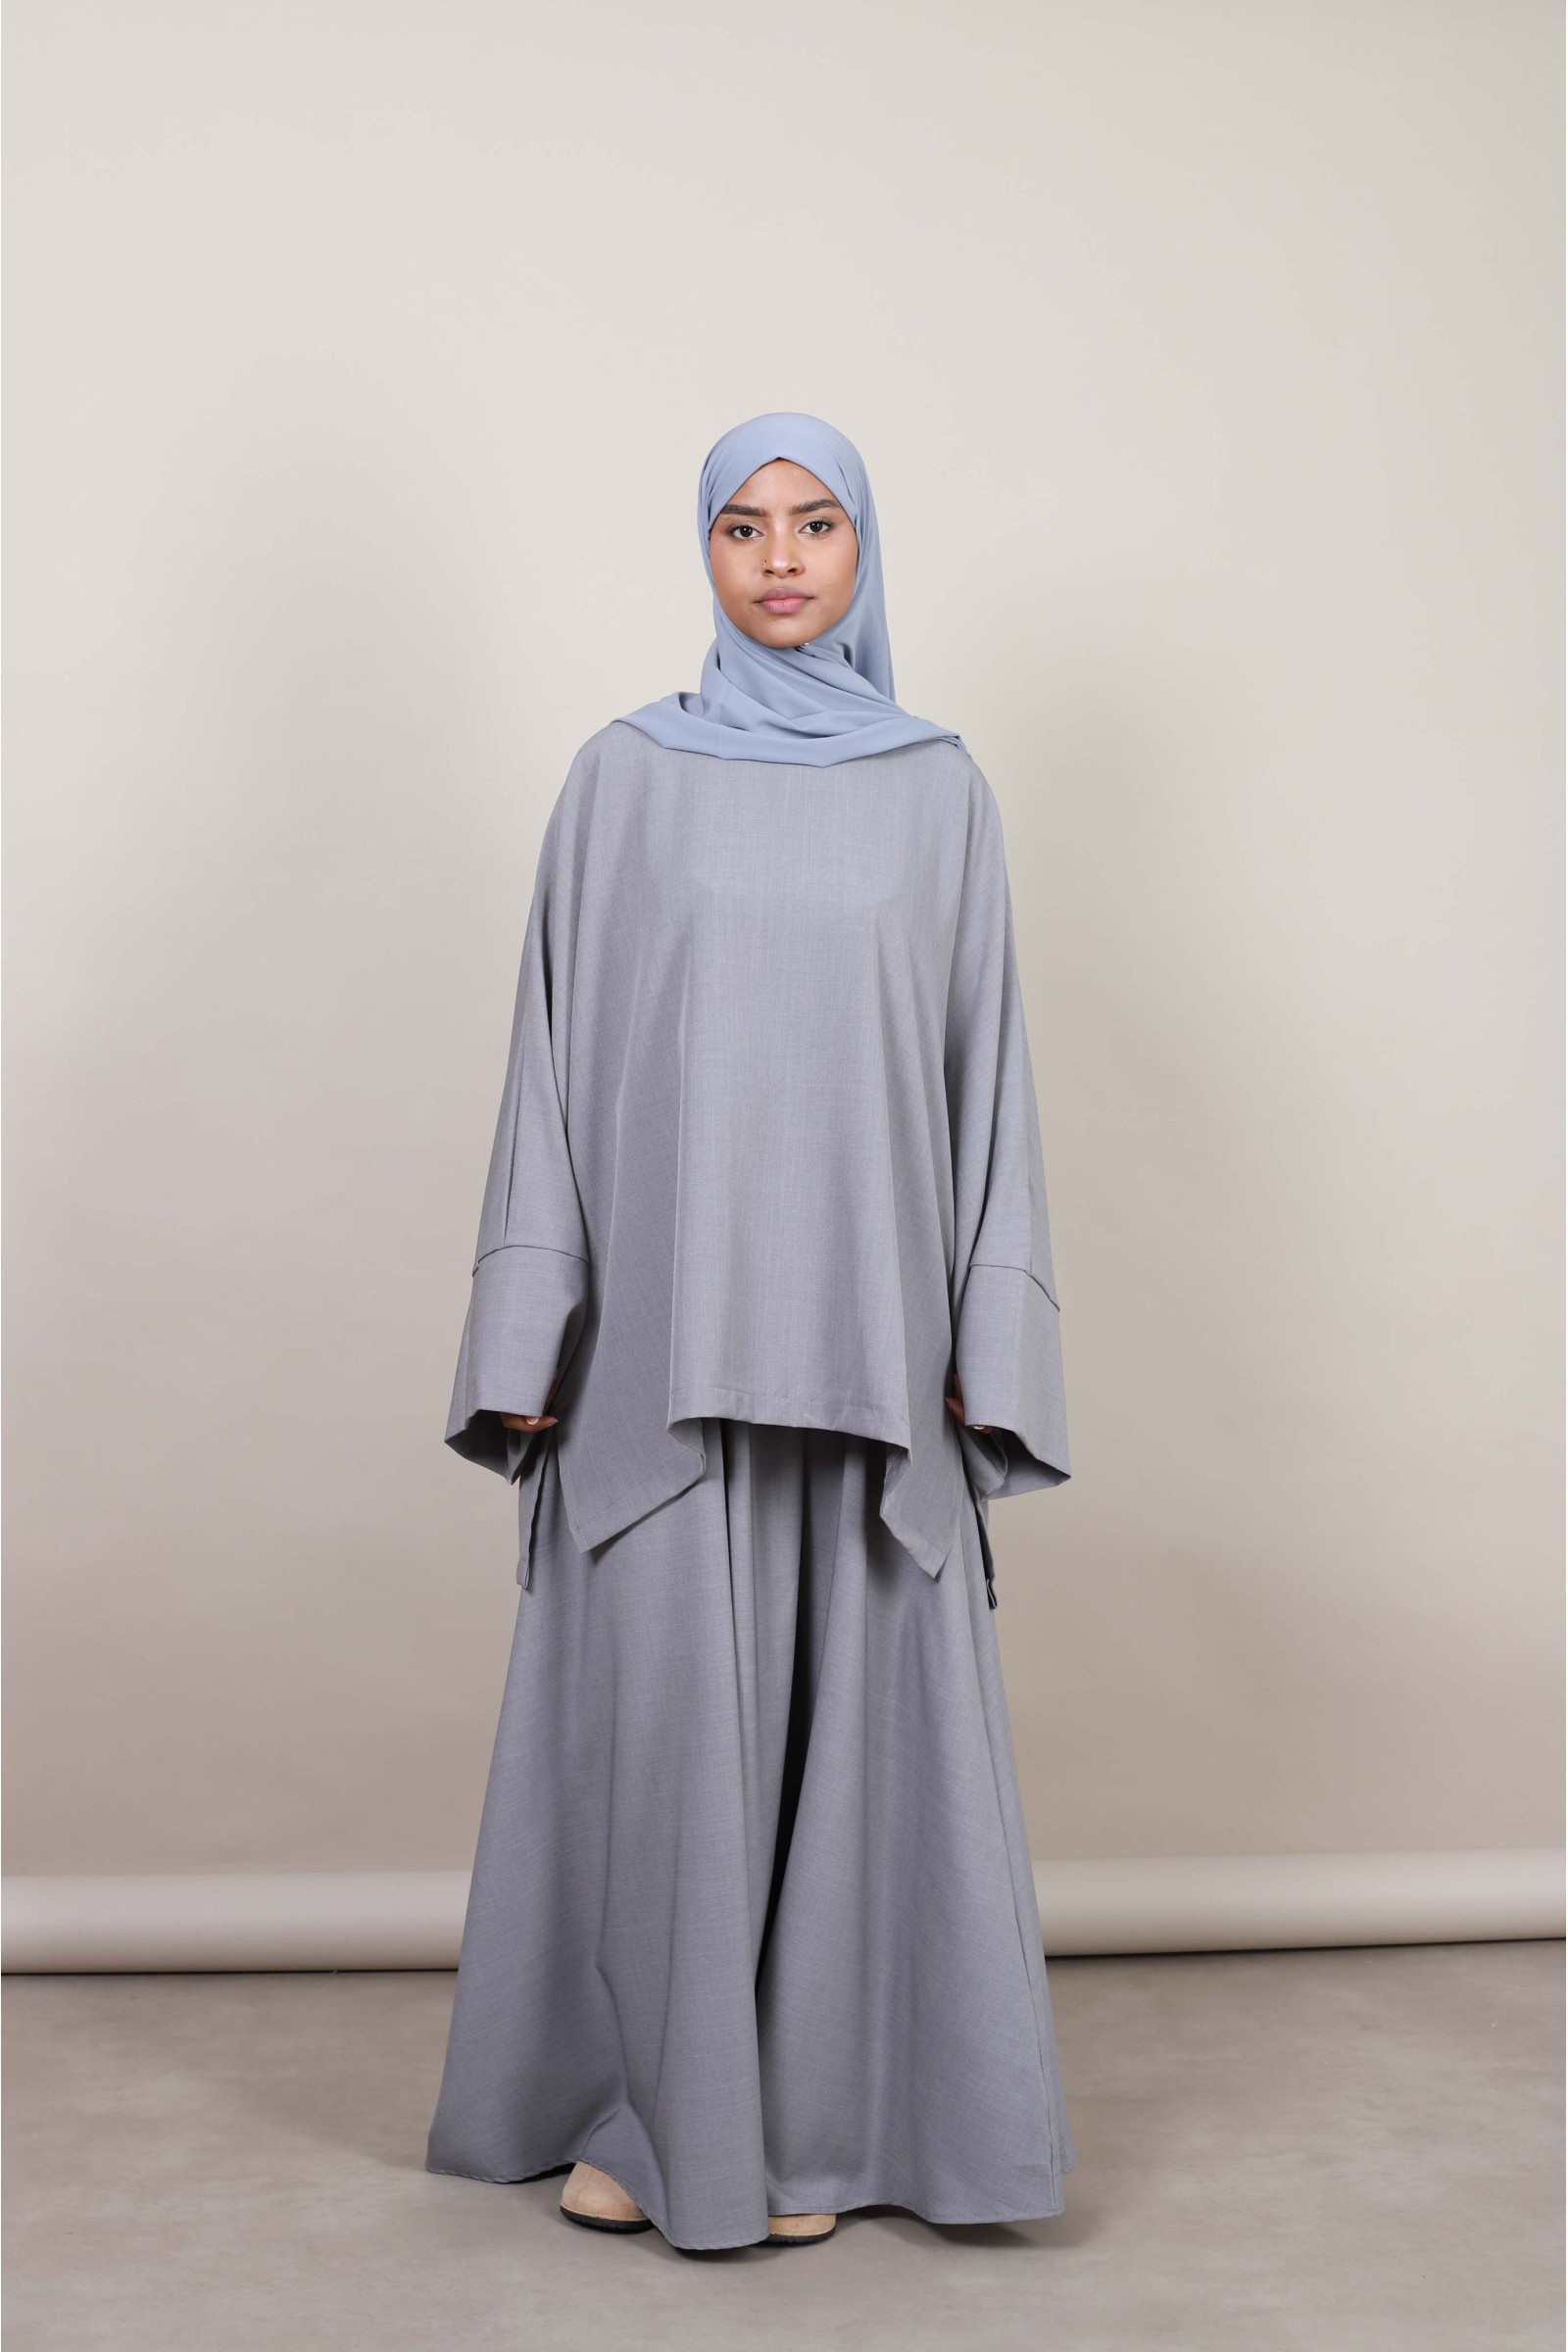 Ensemble modeste fashion hijab femme musulmane